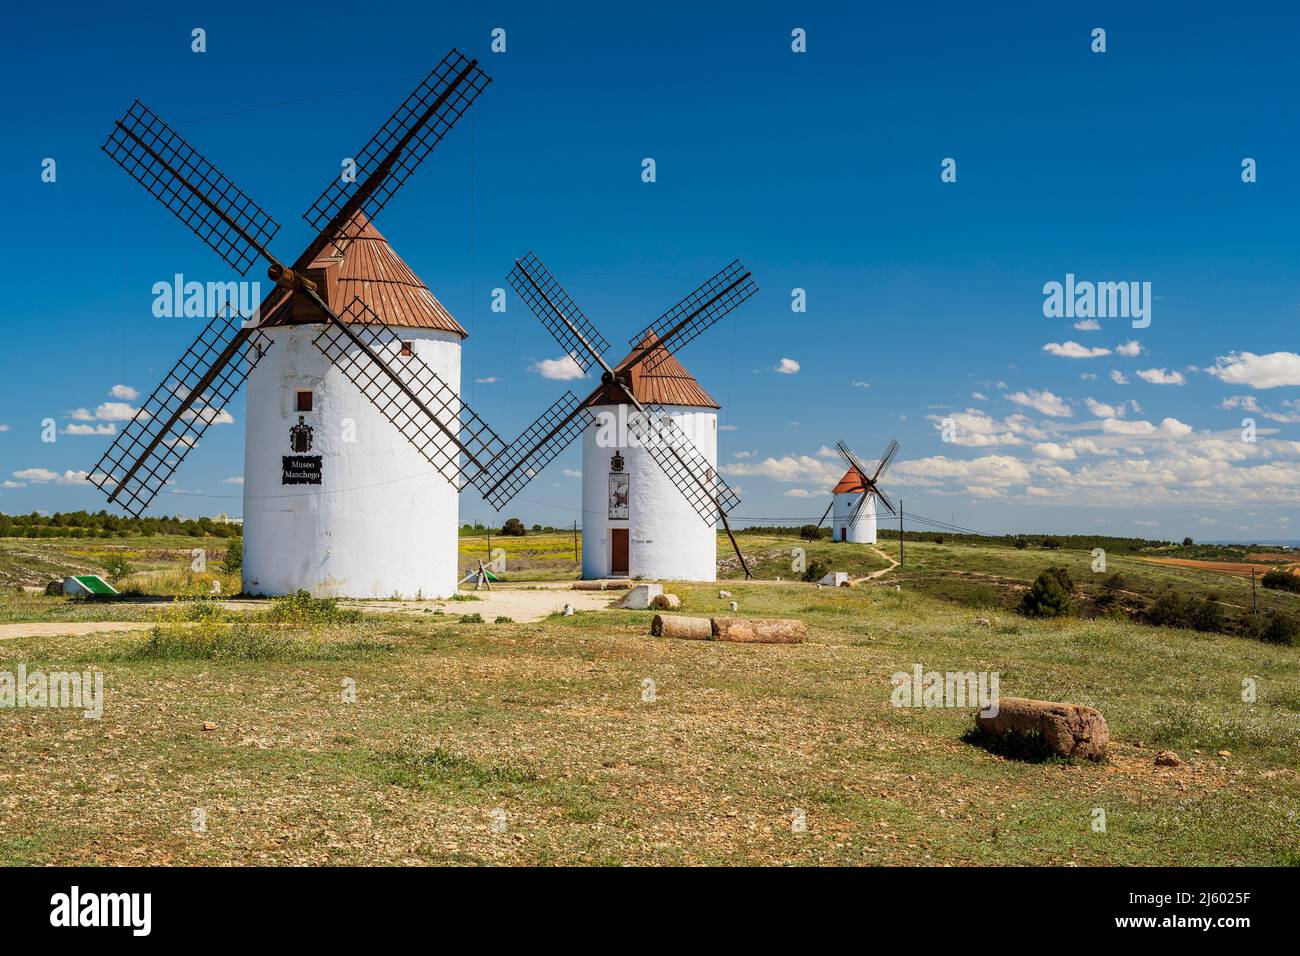 Moulins à vent typiques, Mota del Cuervo, Castilla-la Mancha, Espagne Banque D'Images